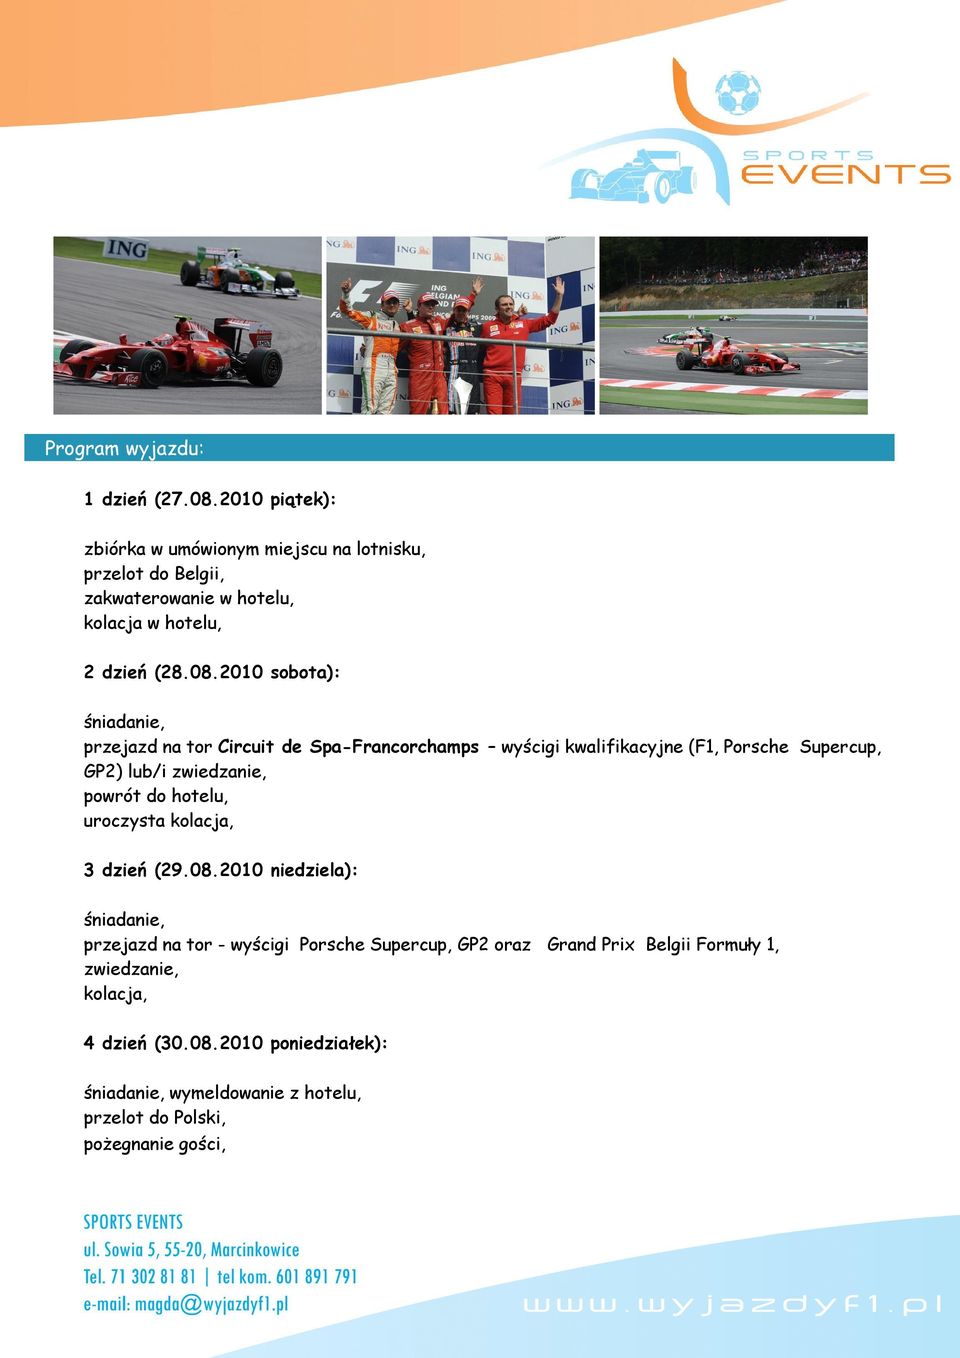 2010 sobota): przejazd na tor Circuit de Spa-Francorchamps wyścigi kwalifikacyjne (F1, Porsche Supercup, GP2) lub/i zwiedzanie, powrót do